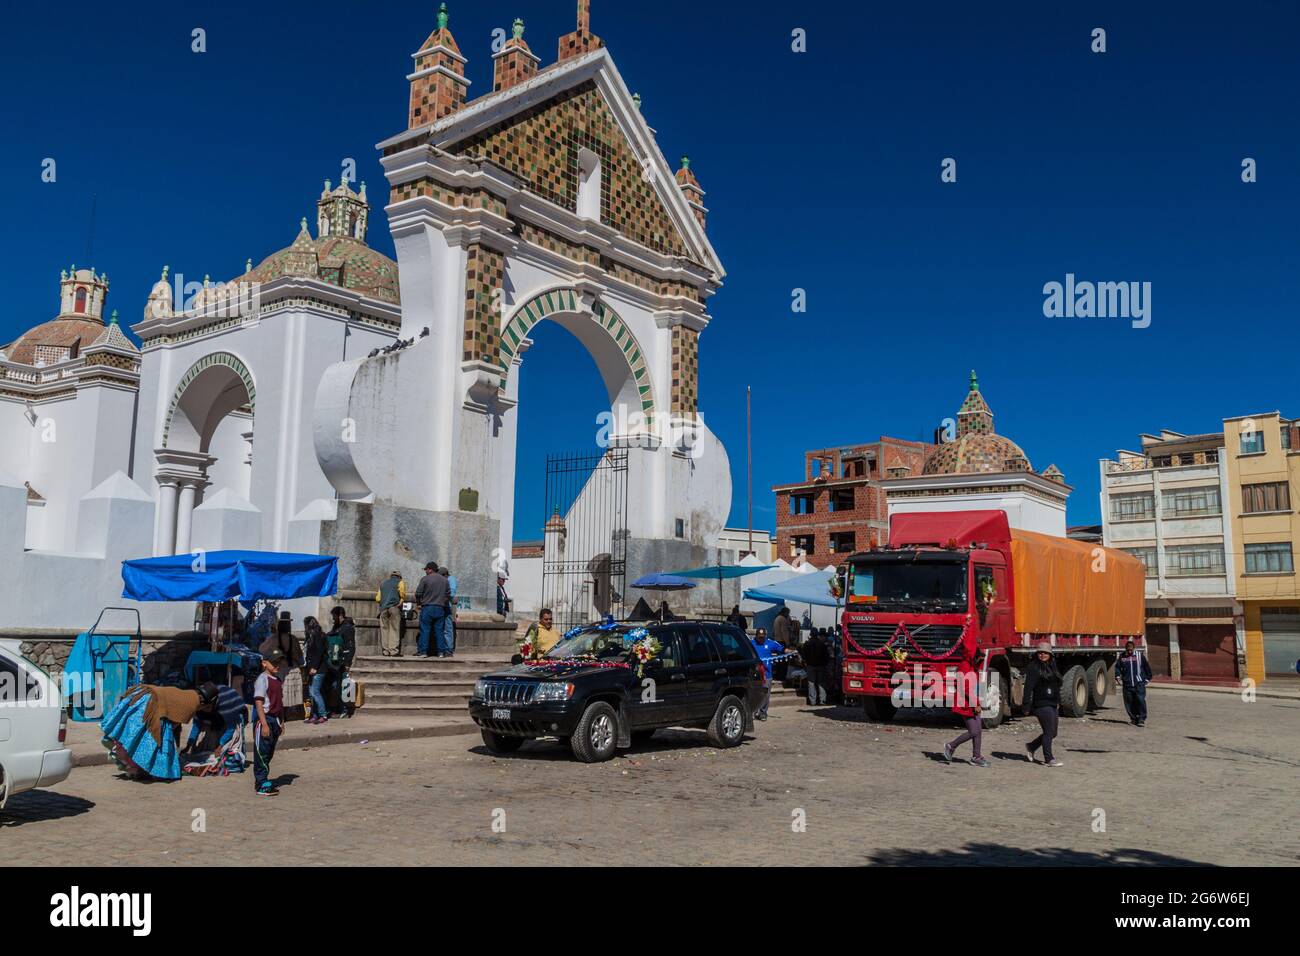 COPABA, BOLIVIEN - 13. MAI 2015: Segnung von Automobilen vor der Kathedrale von Copaba, Bolivien Stockfoto